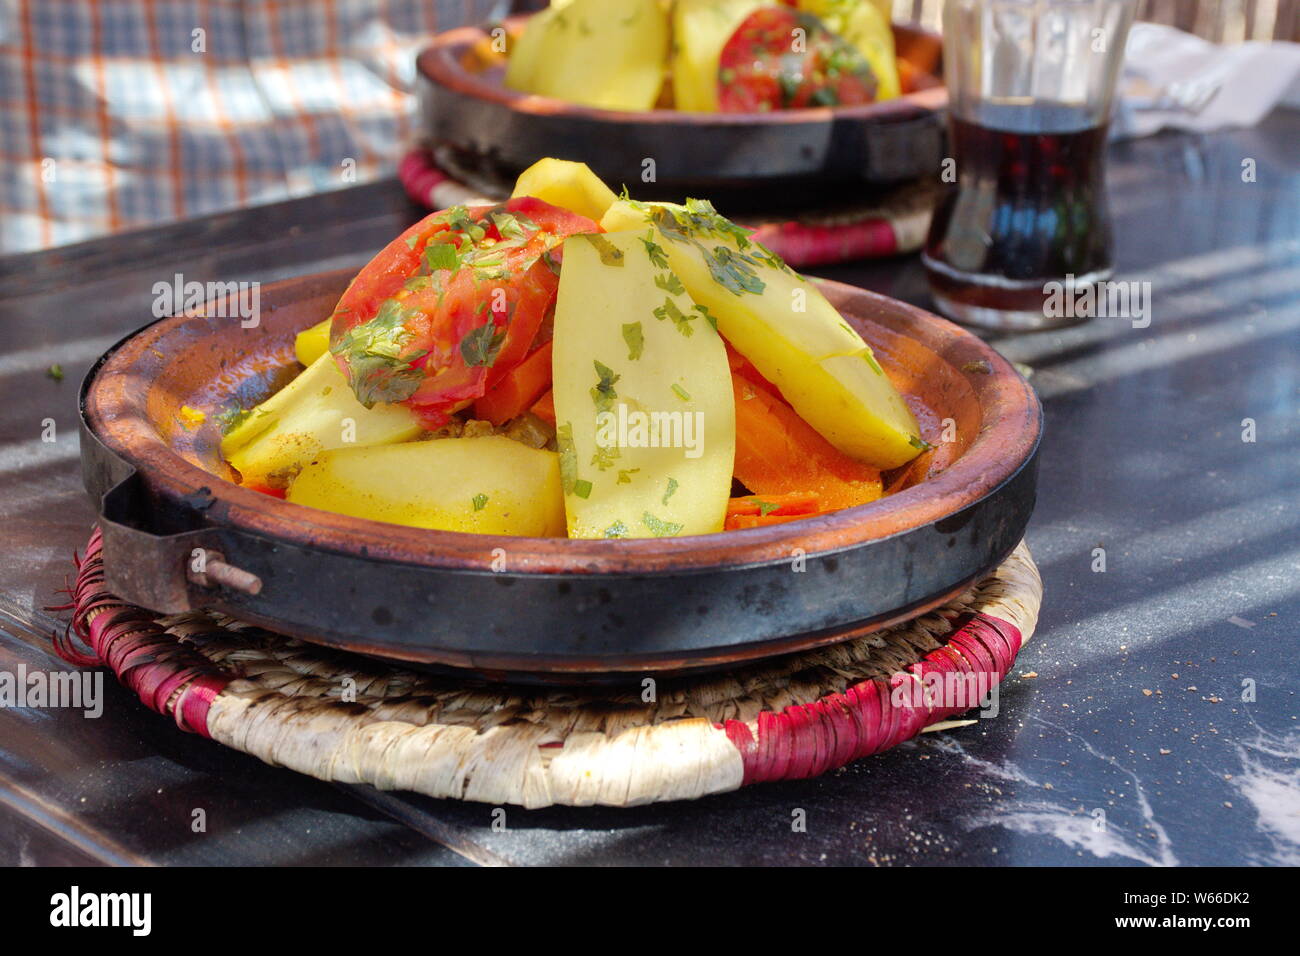 Tagine vegetale - tradizionale cibo marocchino Foto Stock